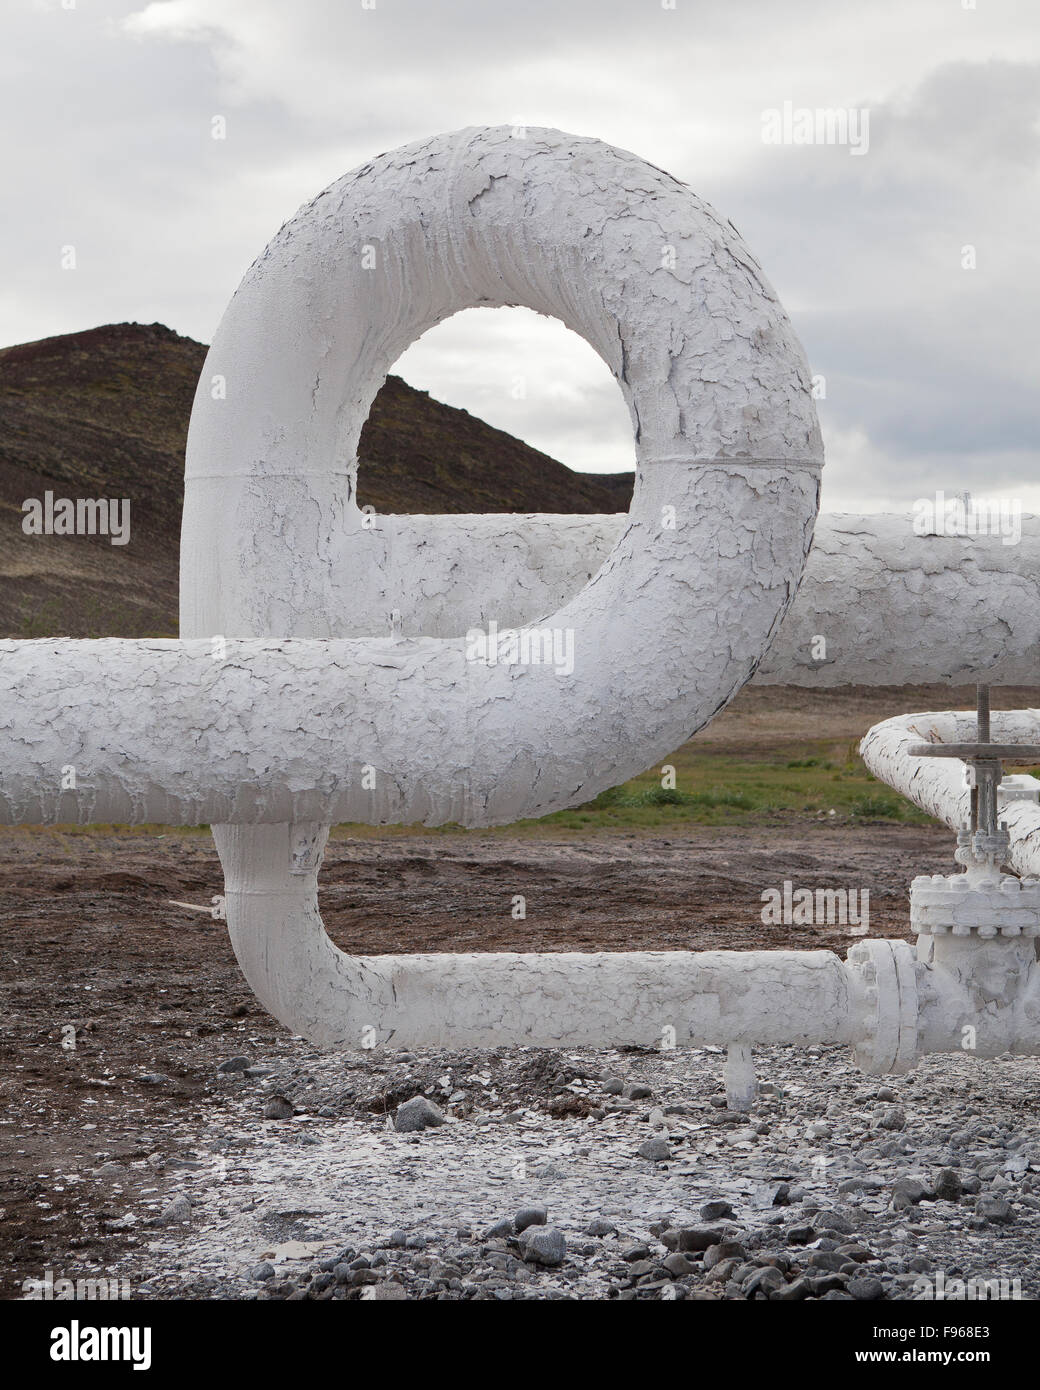 Industrielle Verfall und Kieselsäure auf Rohren an Bjarnarflag geothermische Anlage, Island Stockfoto